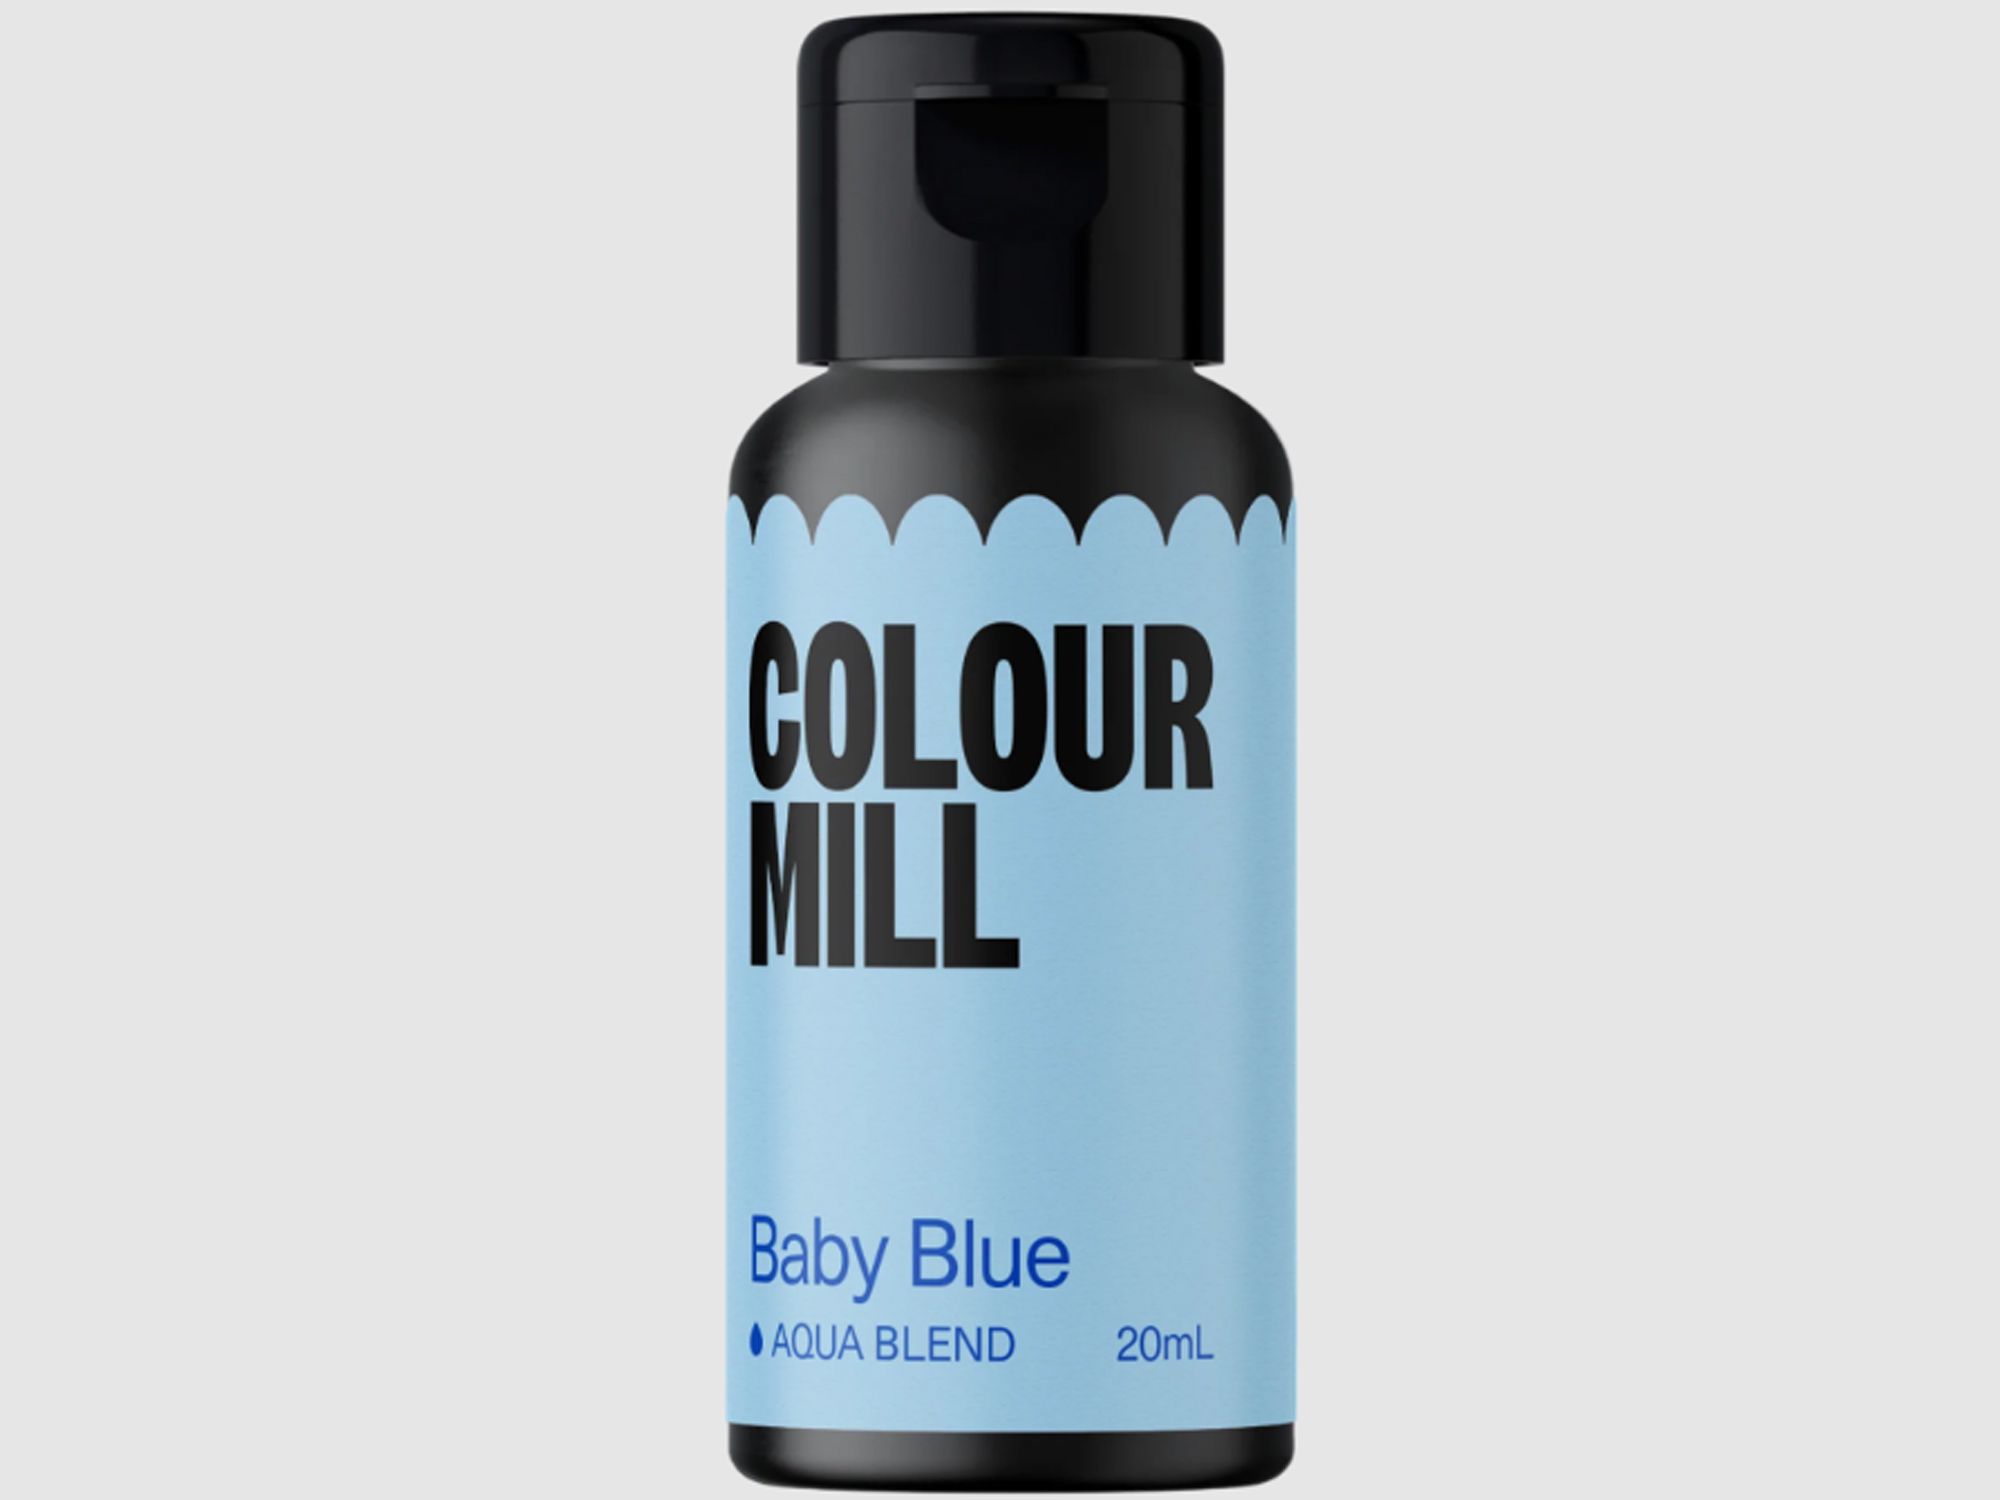 Colour Mill Baby Blue (Aqua Blend) 20ml